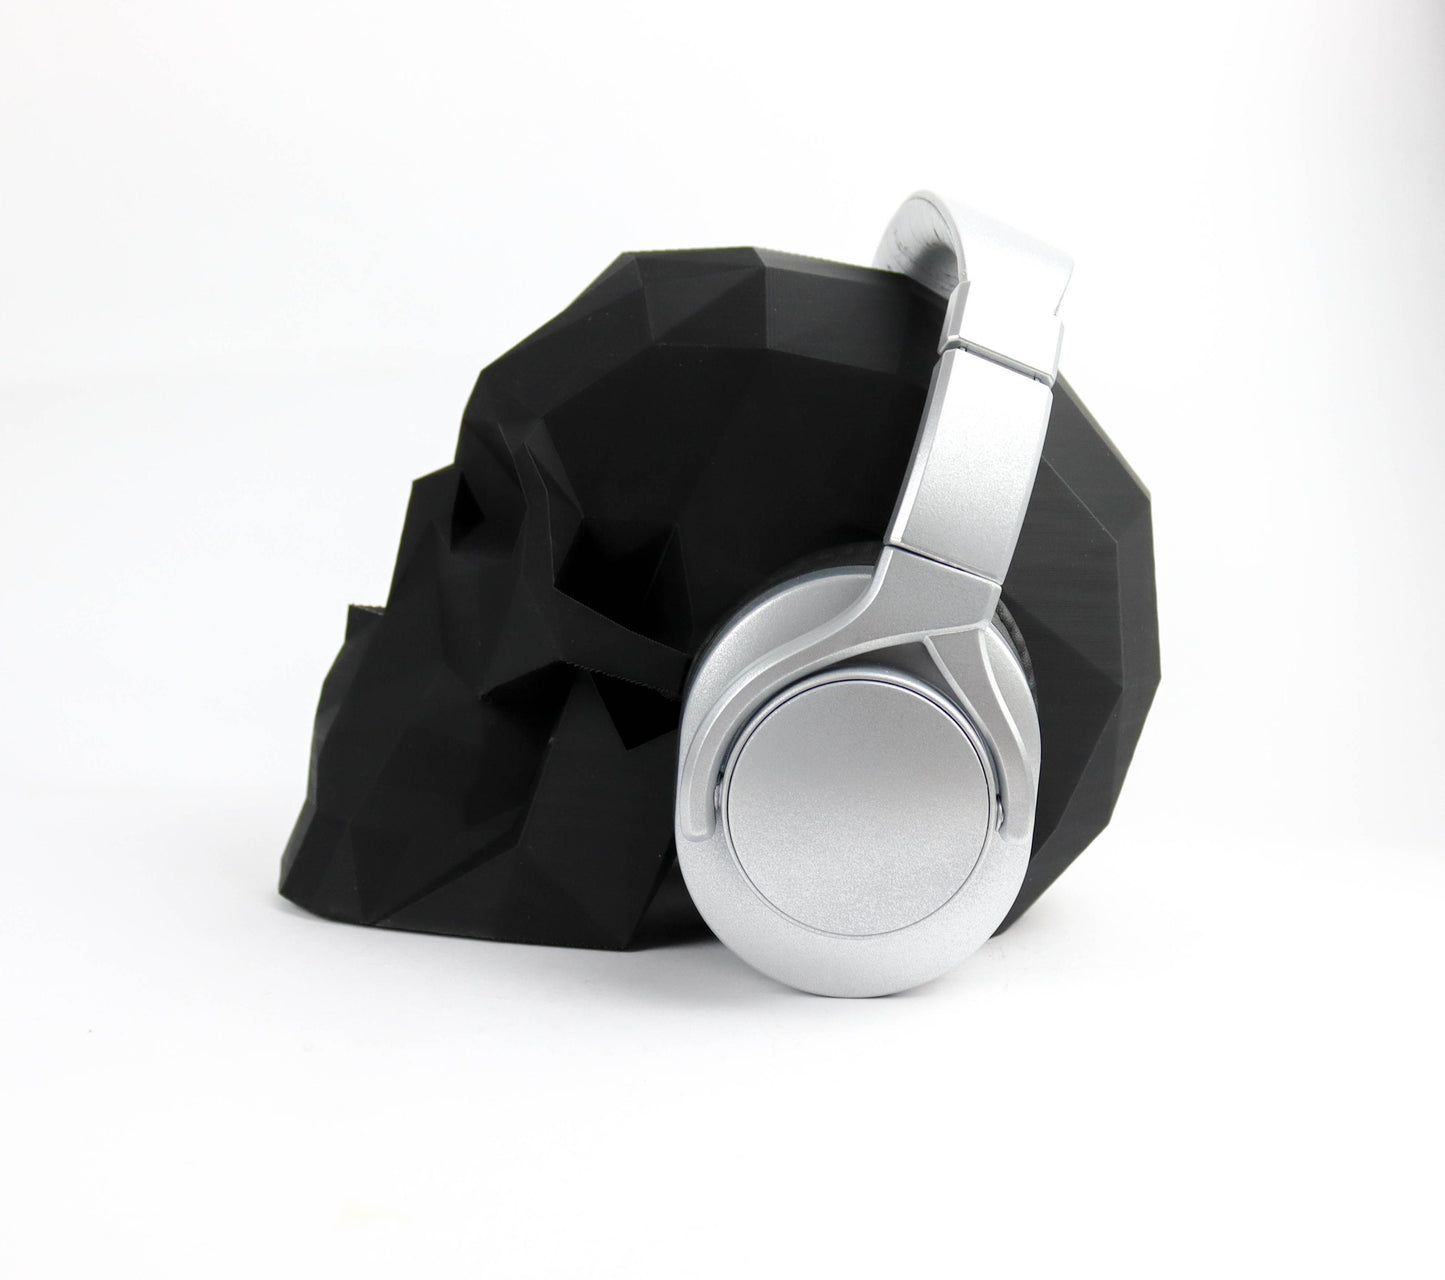 Low Poly Skull Headphone Holder, Skull Horror Decor Headphone stand